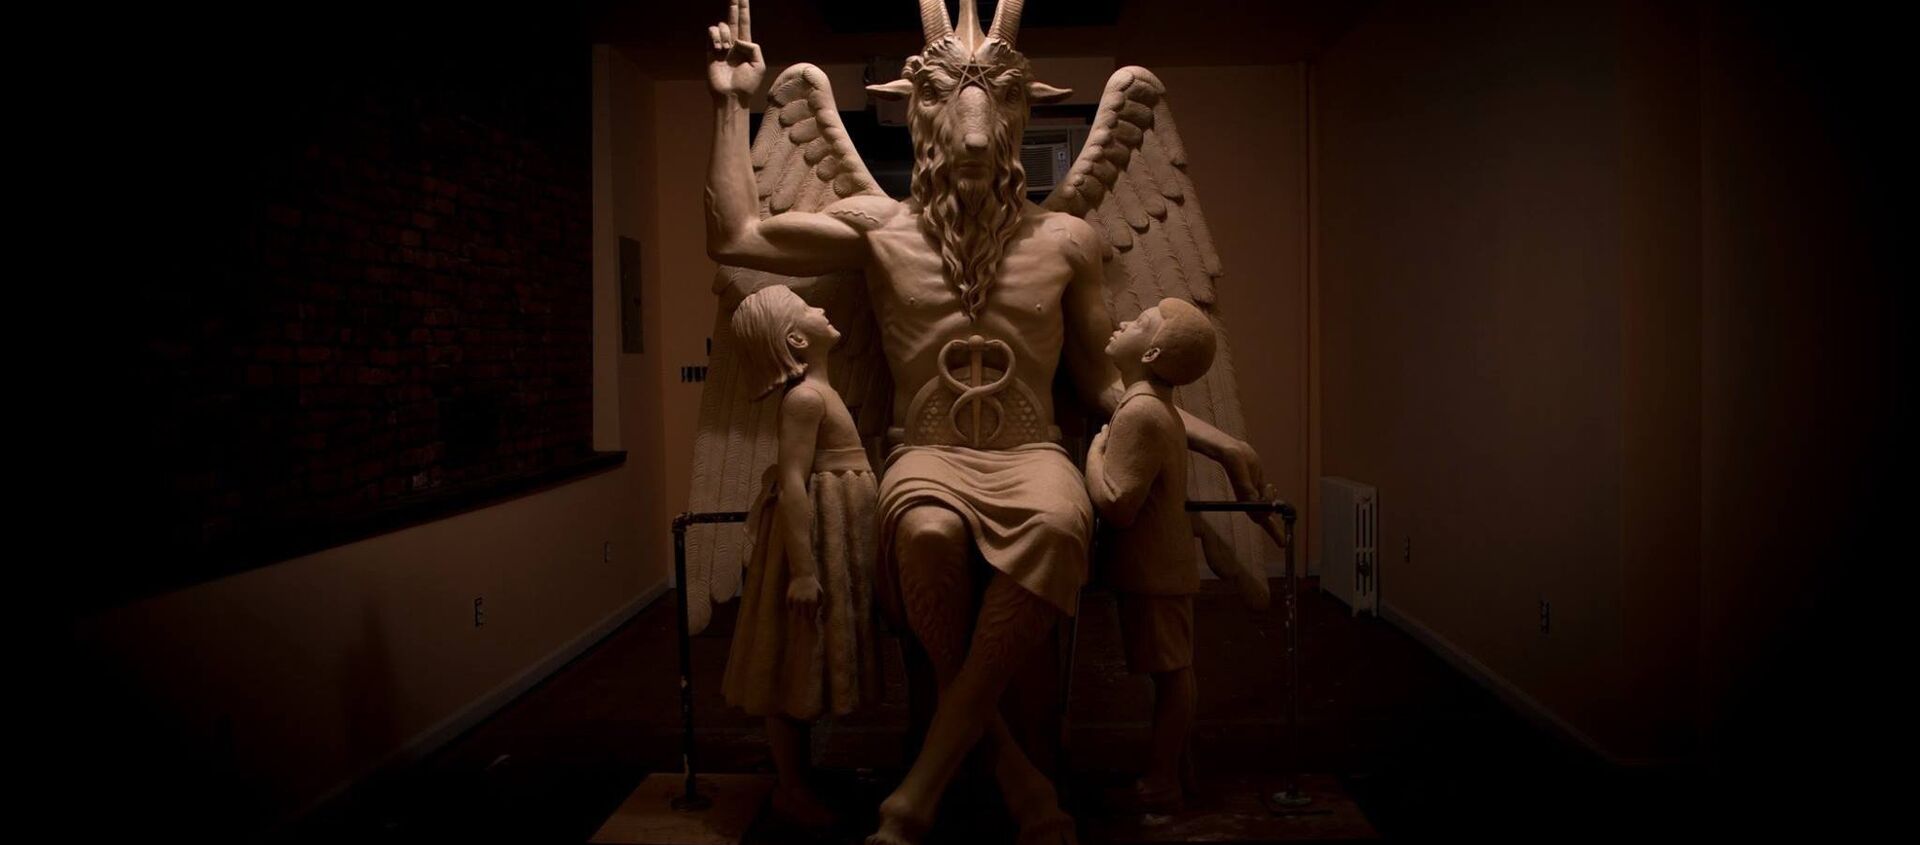 Michigan'daki Satanist Tapınağı'nda bulunan Bafomet heykeli - Sputnik Türkiye, 1920, 27.07.2015